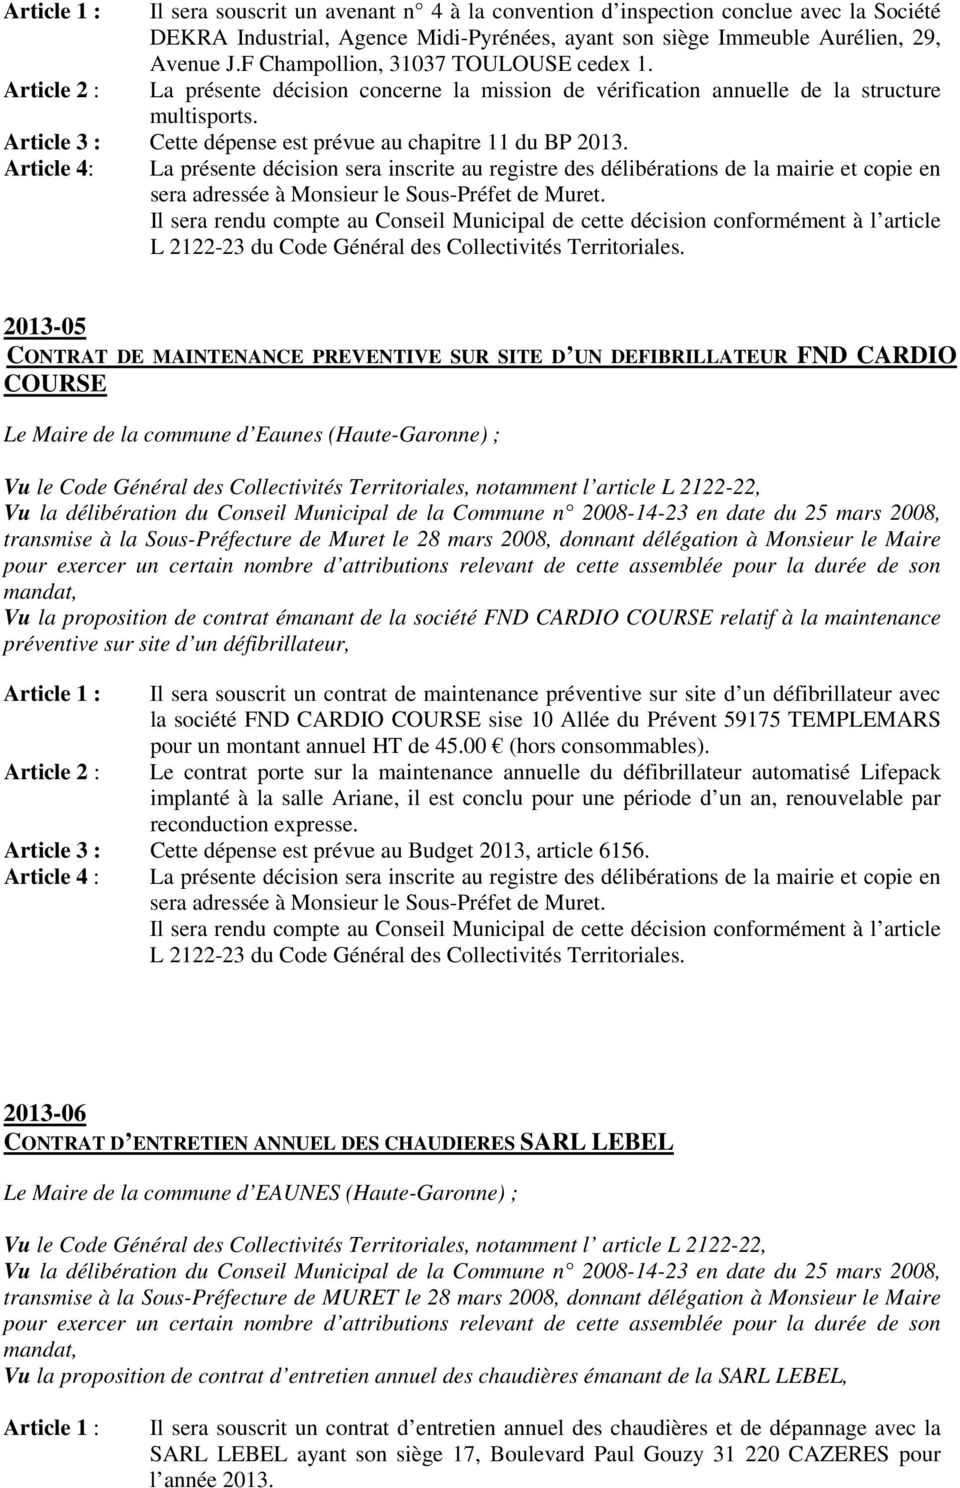 Article 4: 2013-05 CONTRAT DE MAINTENANCE PREVENTIVE SUR SITE D UN DEFIBRILLATEUR FND CARDIO COURSE Le Maire de la commune d Eaunes (Haute-Garonne) ; transmise à la Sous-Préfecture de Muret le 28